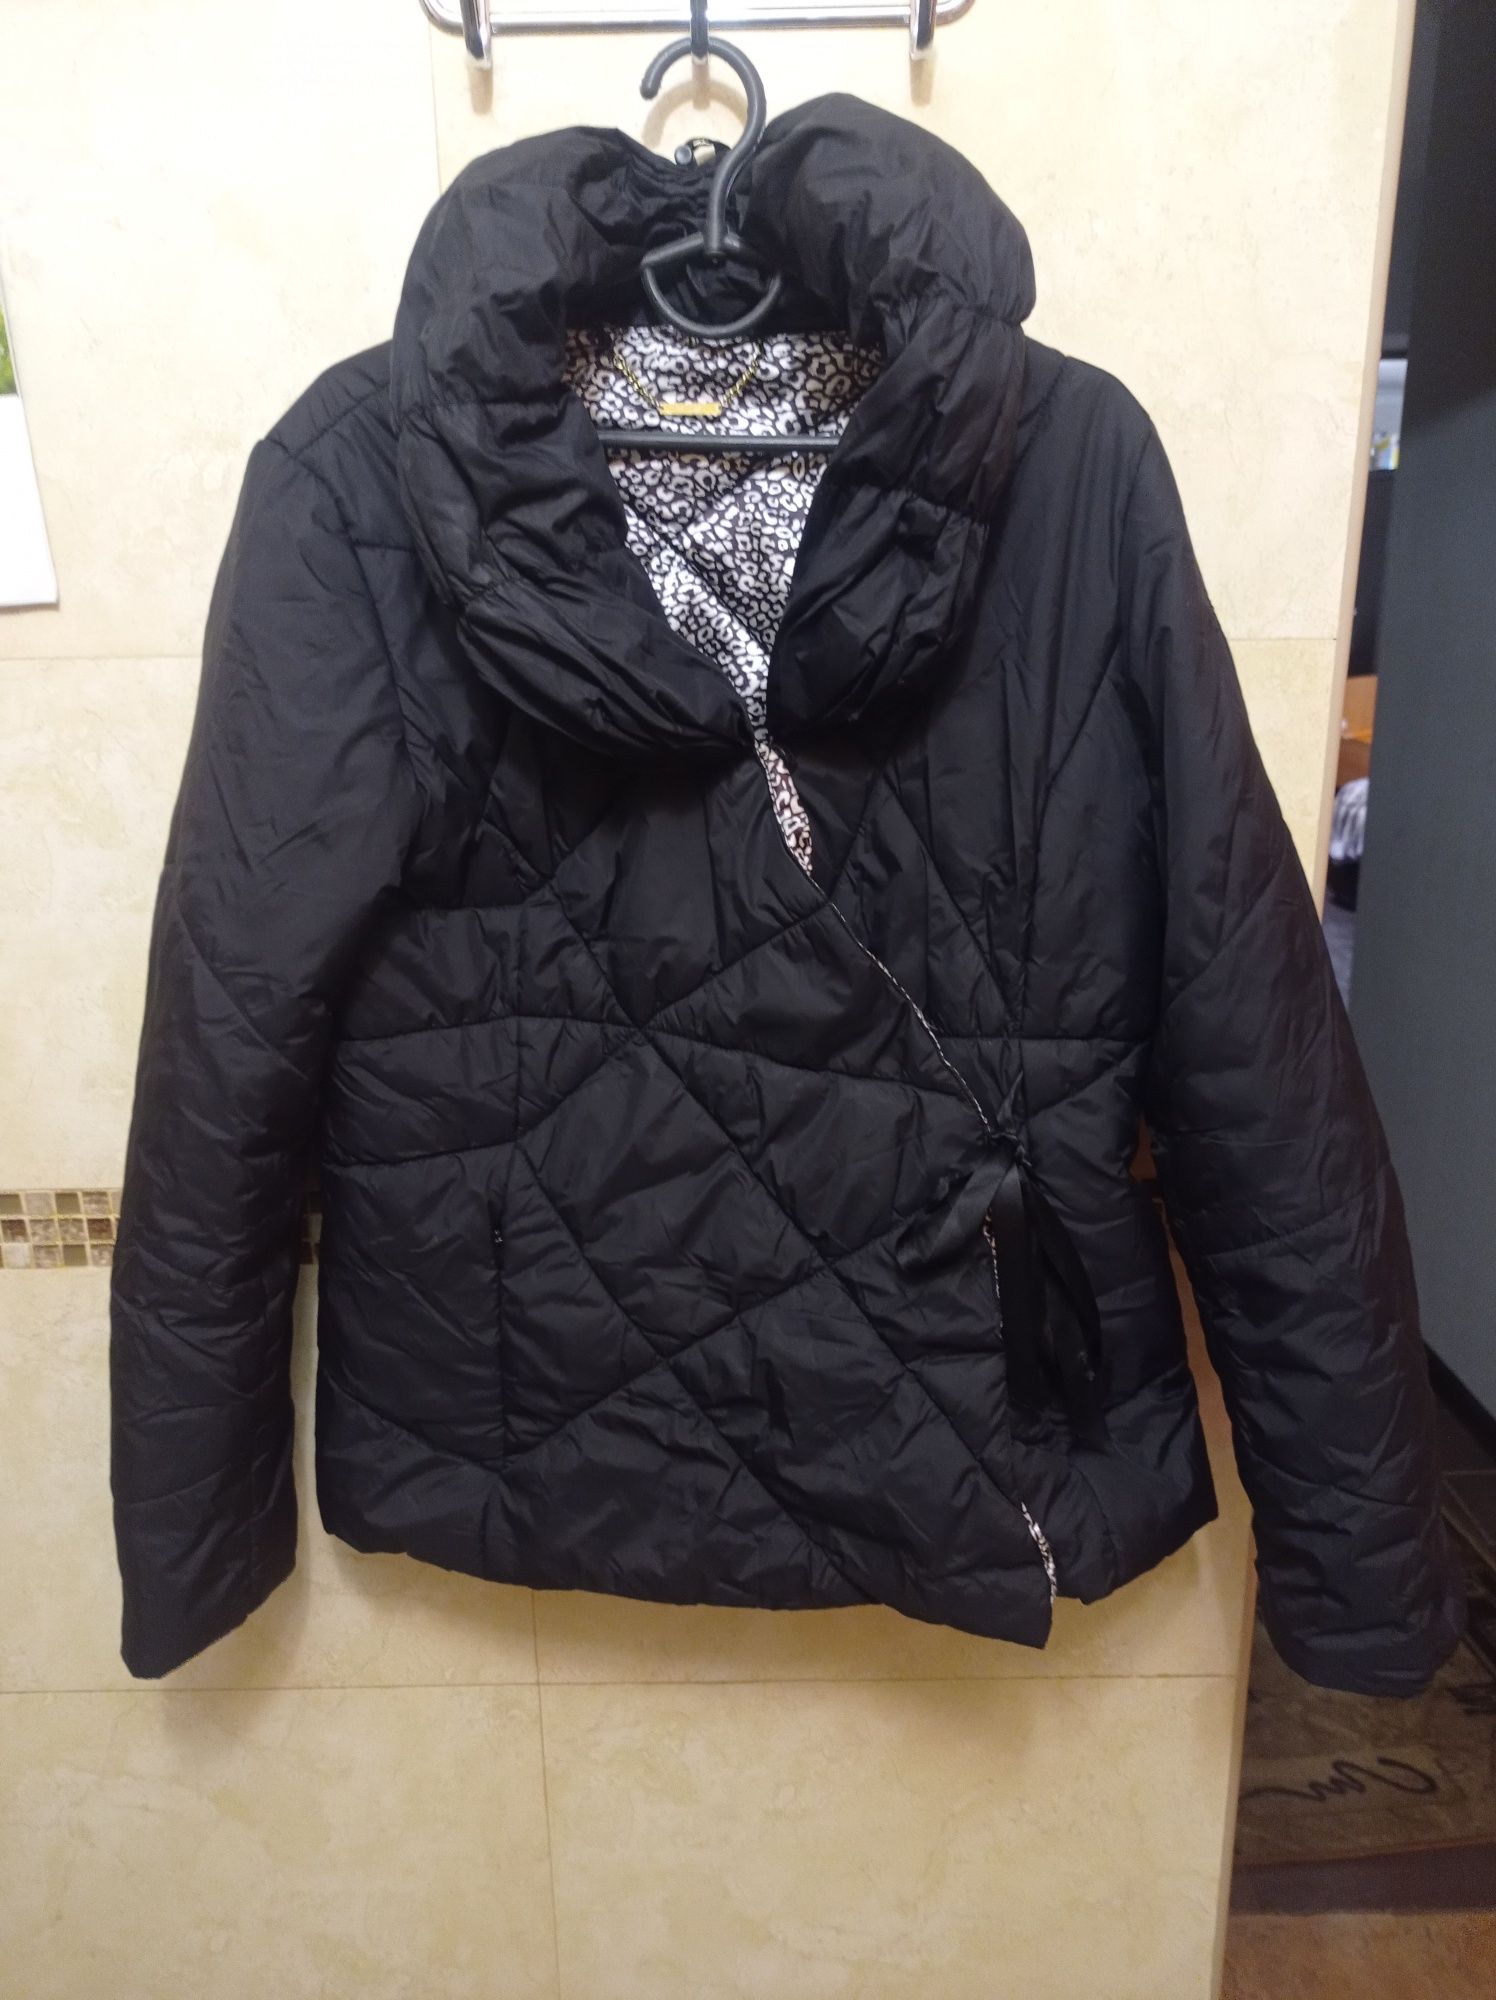 Куртка жіноча розмір L, 48 весна осінь, женская куртка,размер L, 48